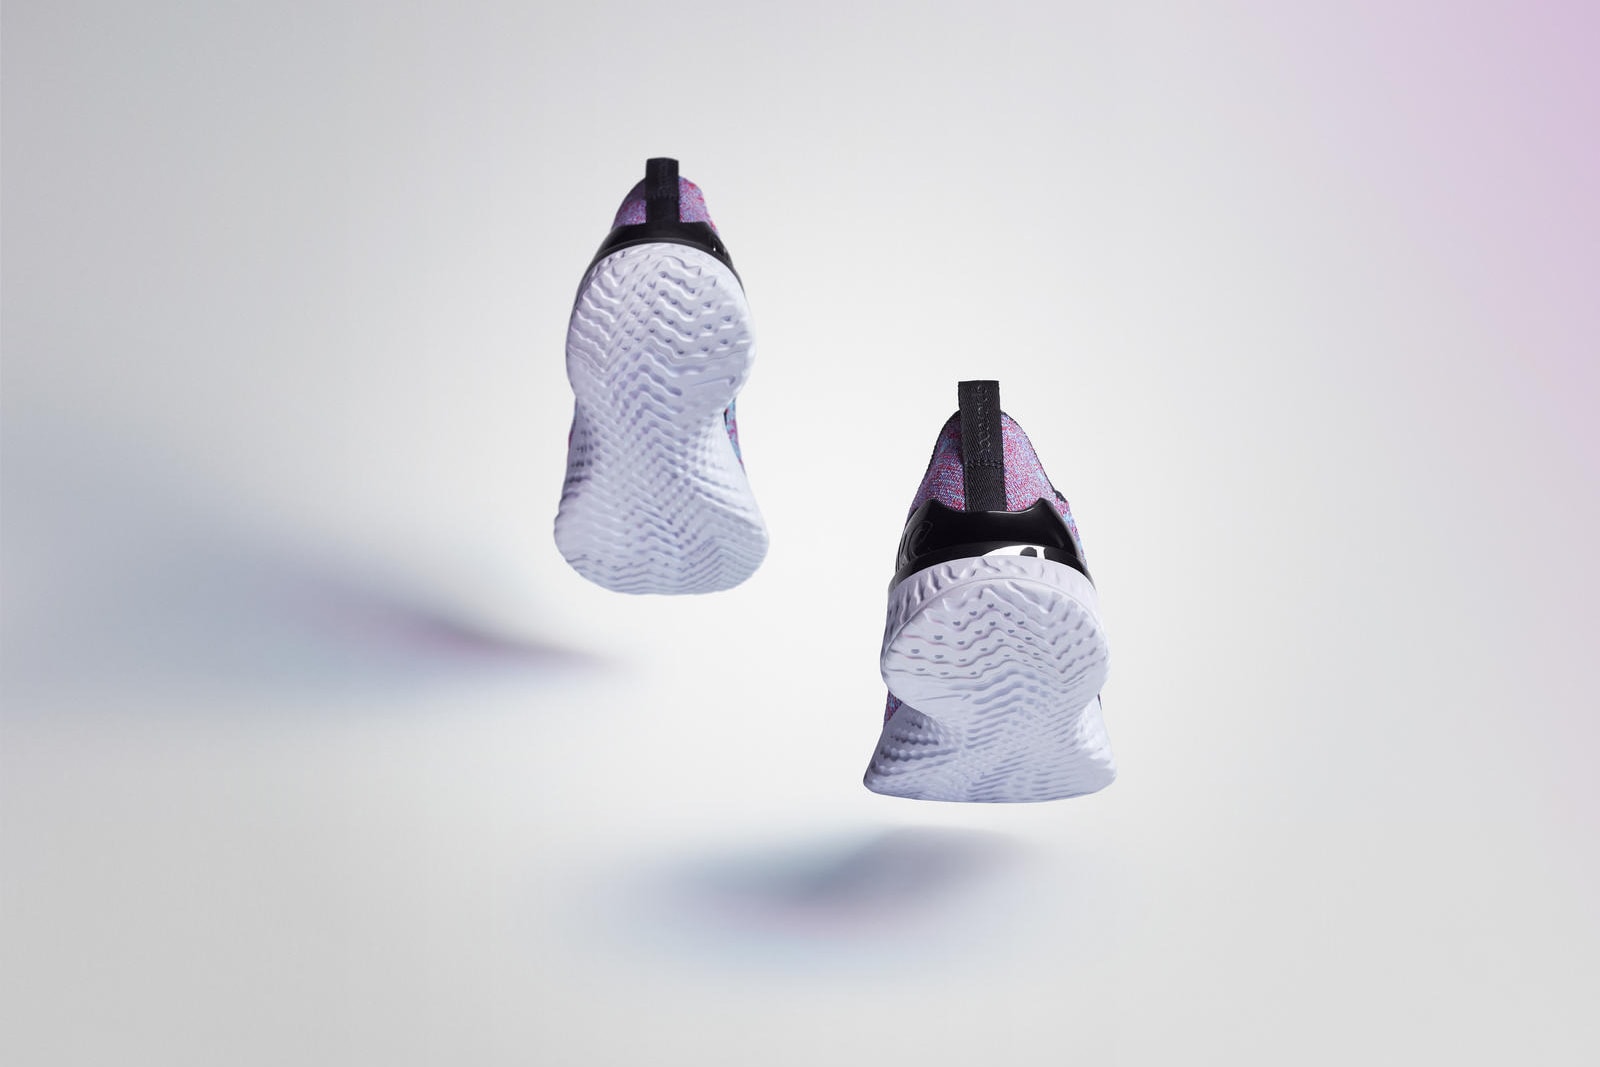 Nike Phantom React Flyknit First Look Blue Purple Laceless Release Date  Info